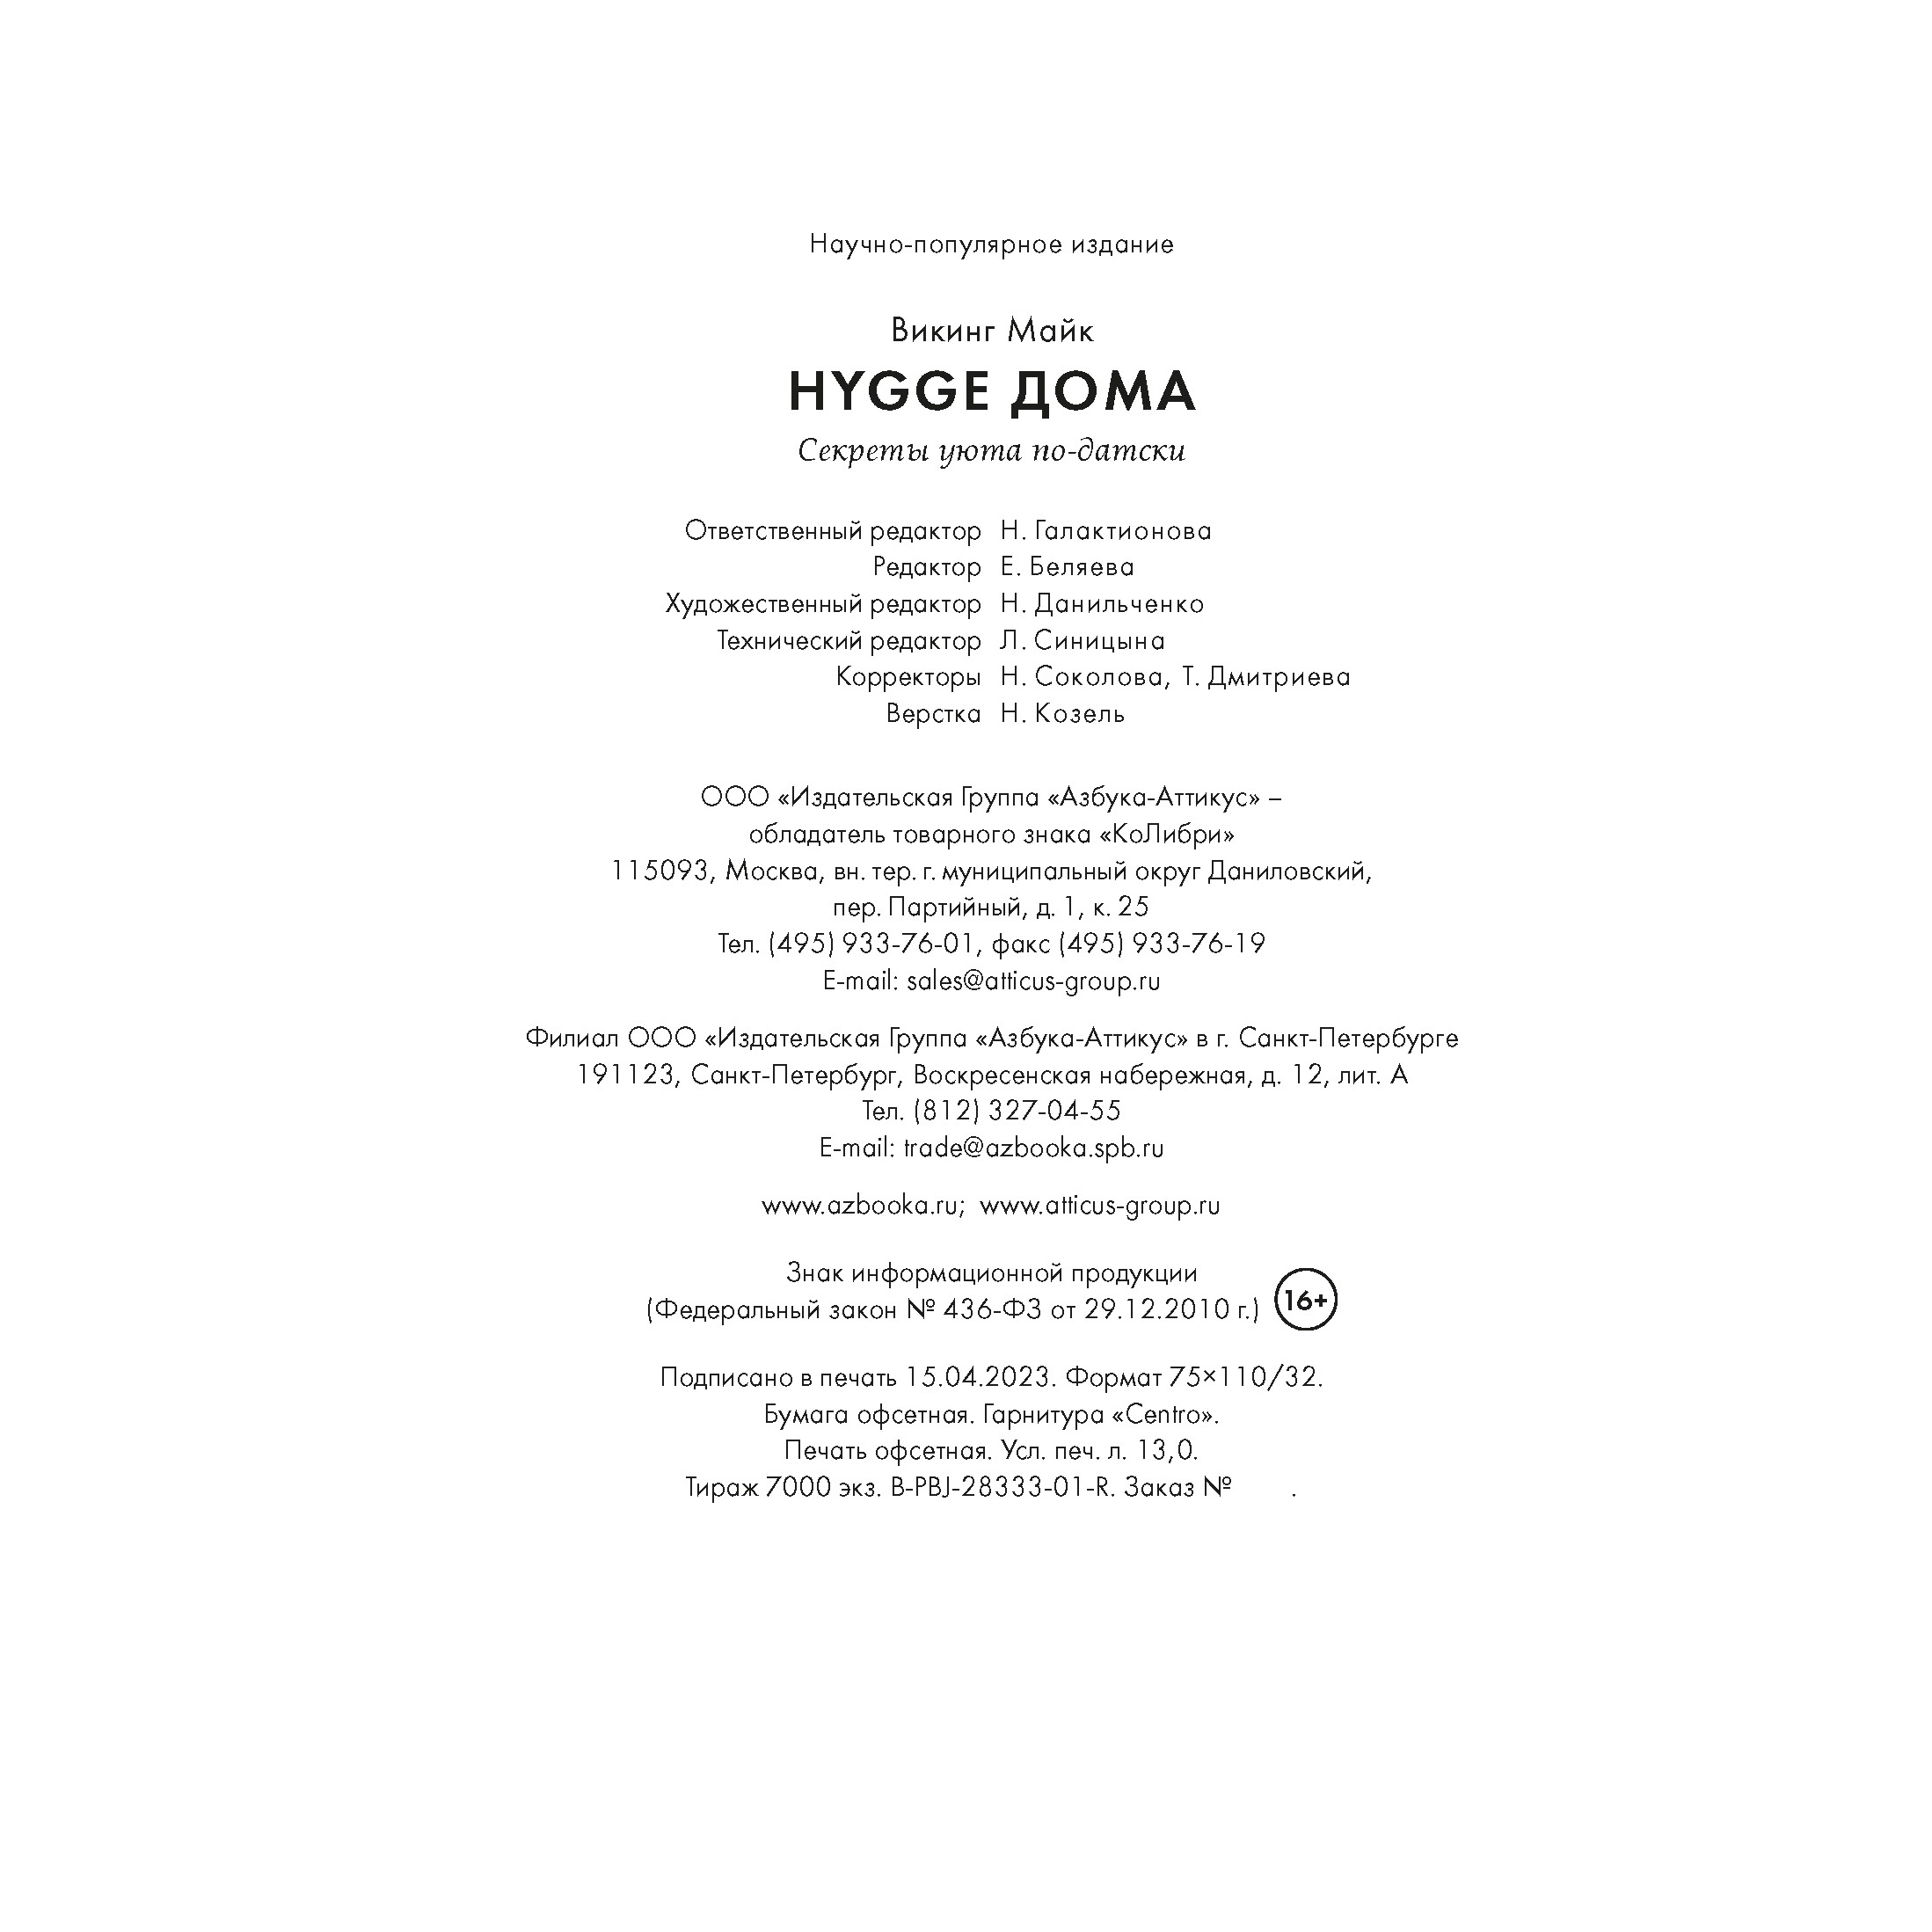 Книга КОЛИБРИ Hygge дома: Секреты уюта по-датски - фото 19